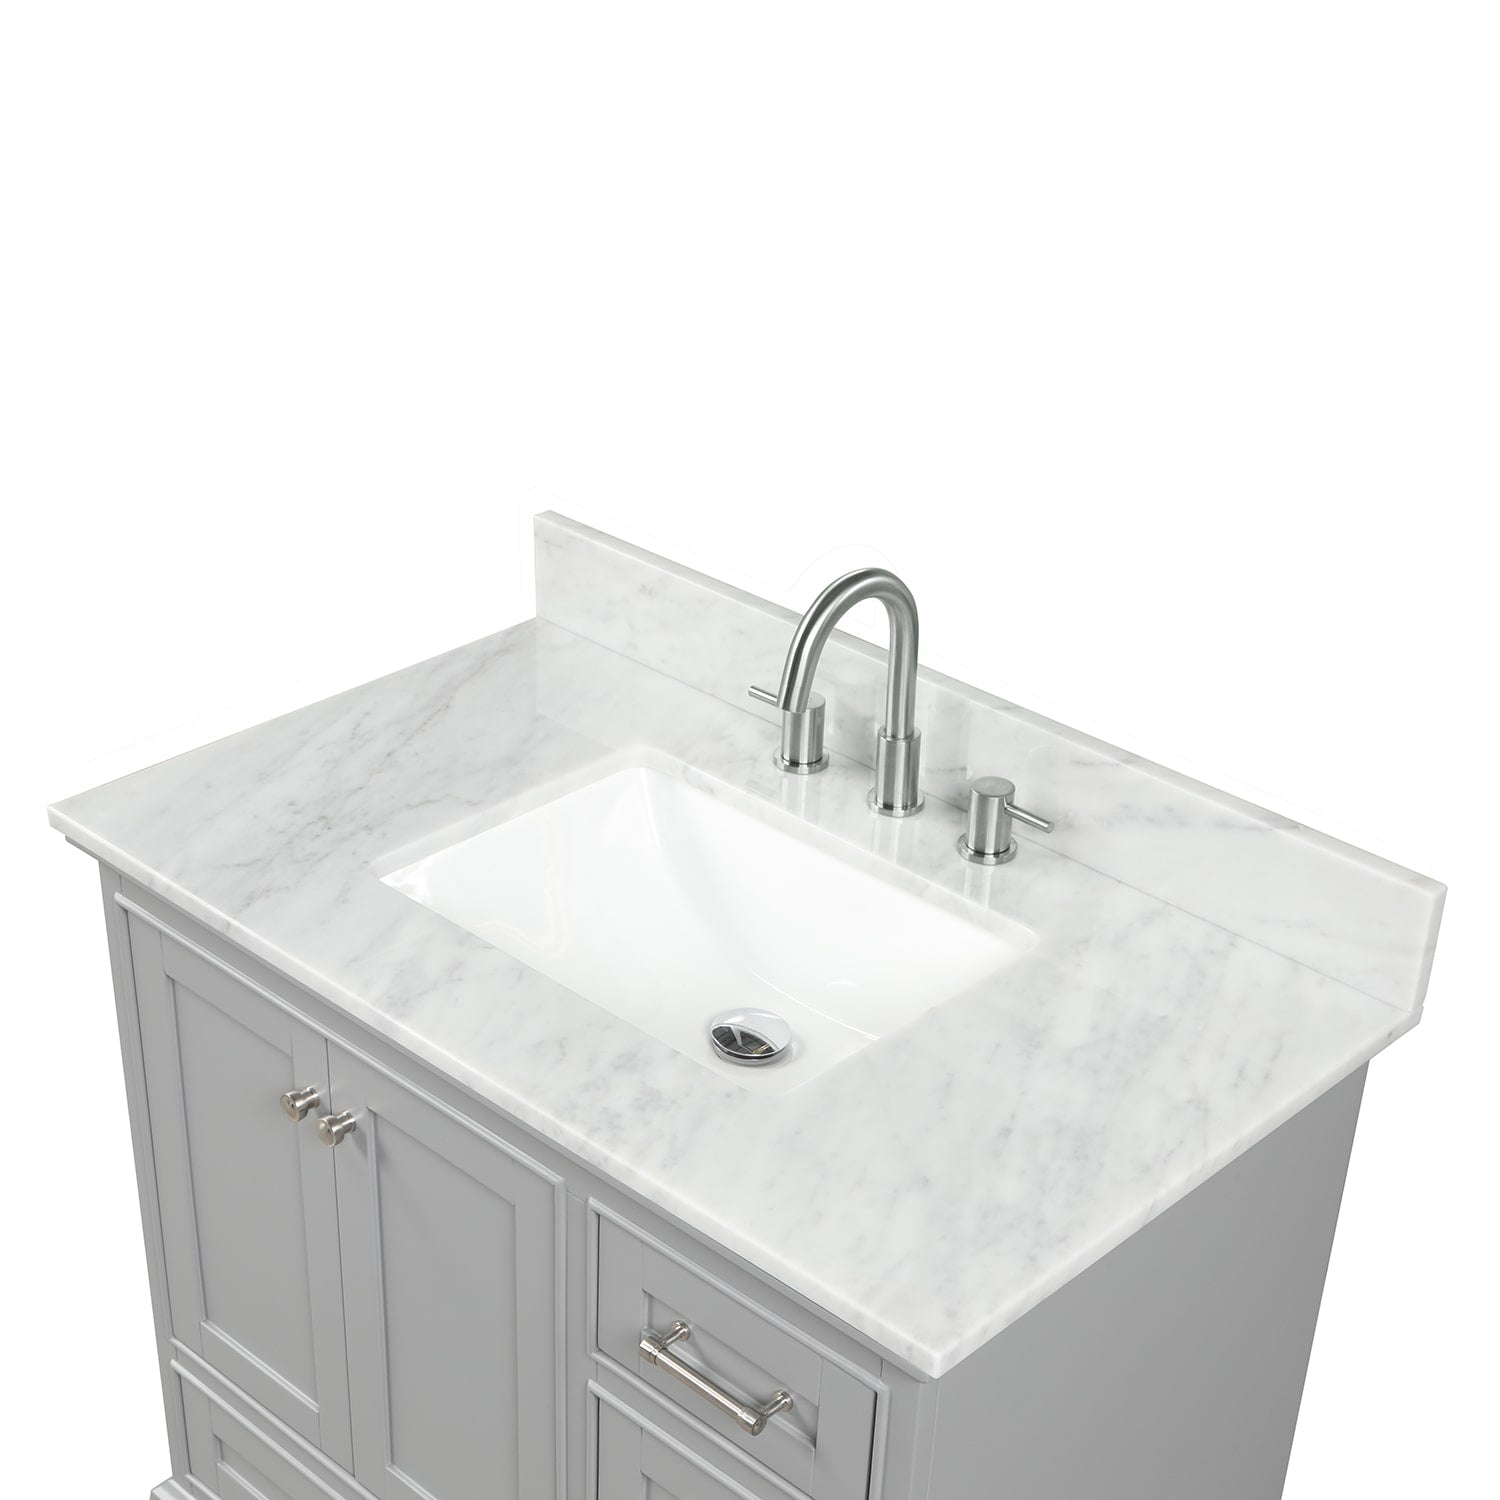 Copenhagen 36″ Bathroom Vanity with Marble Countertop and Ceramic Sink - Contemporary Bathroom Vanity